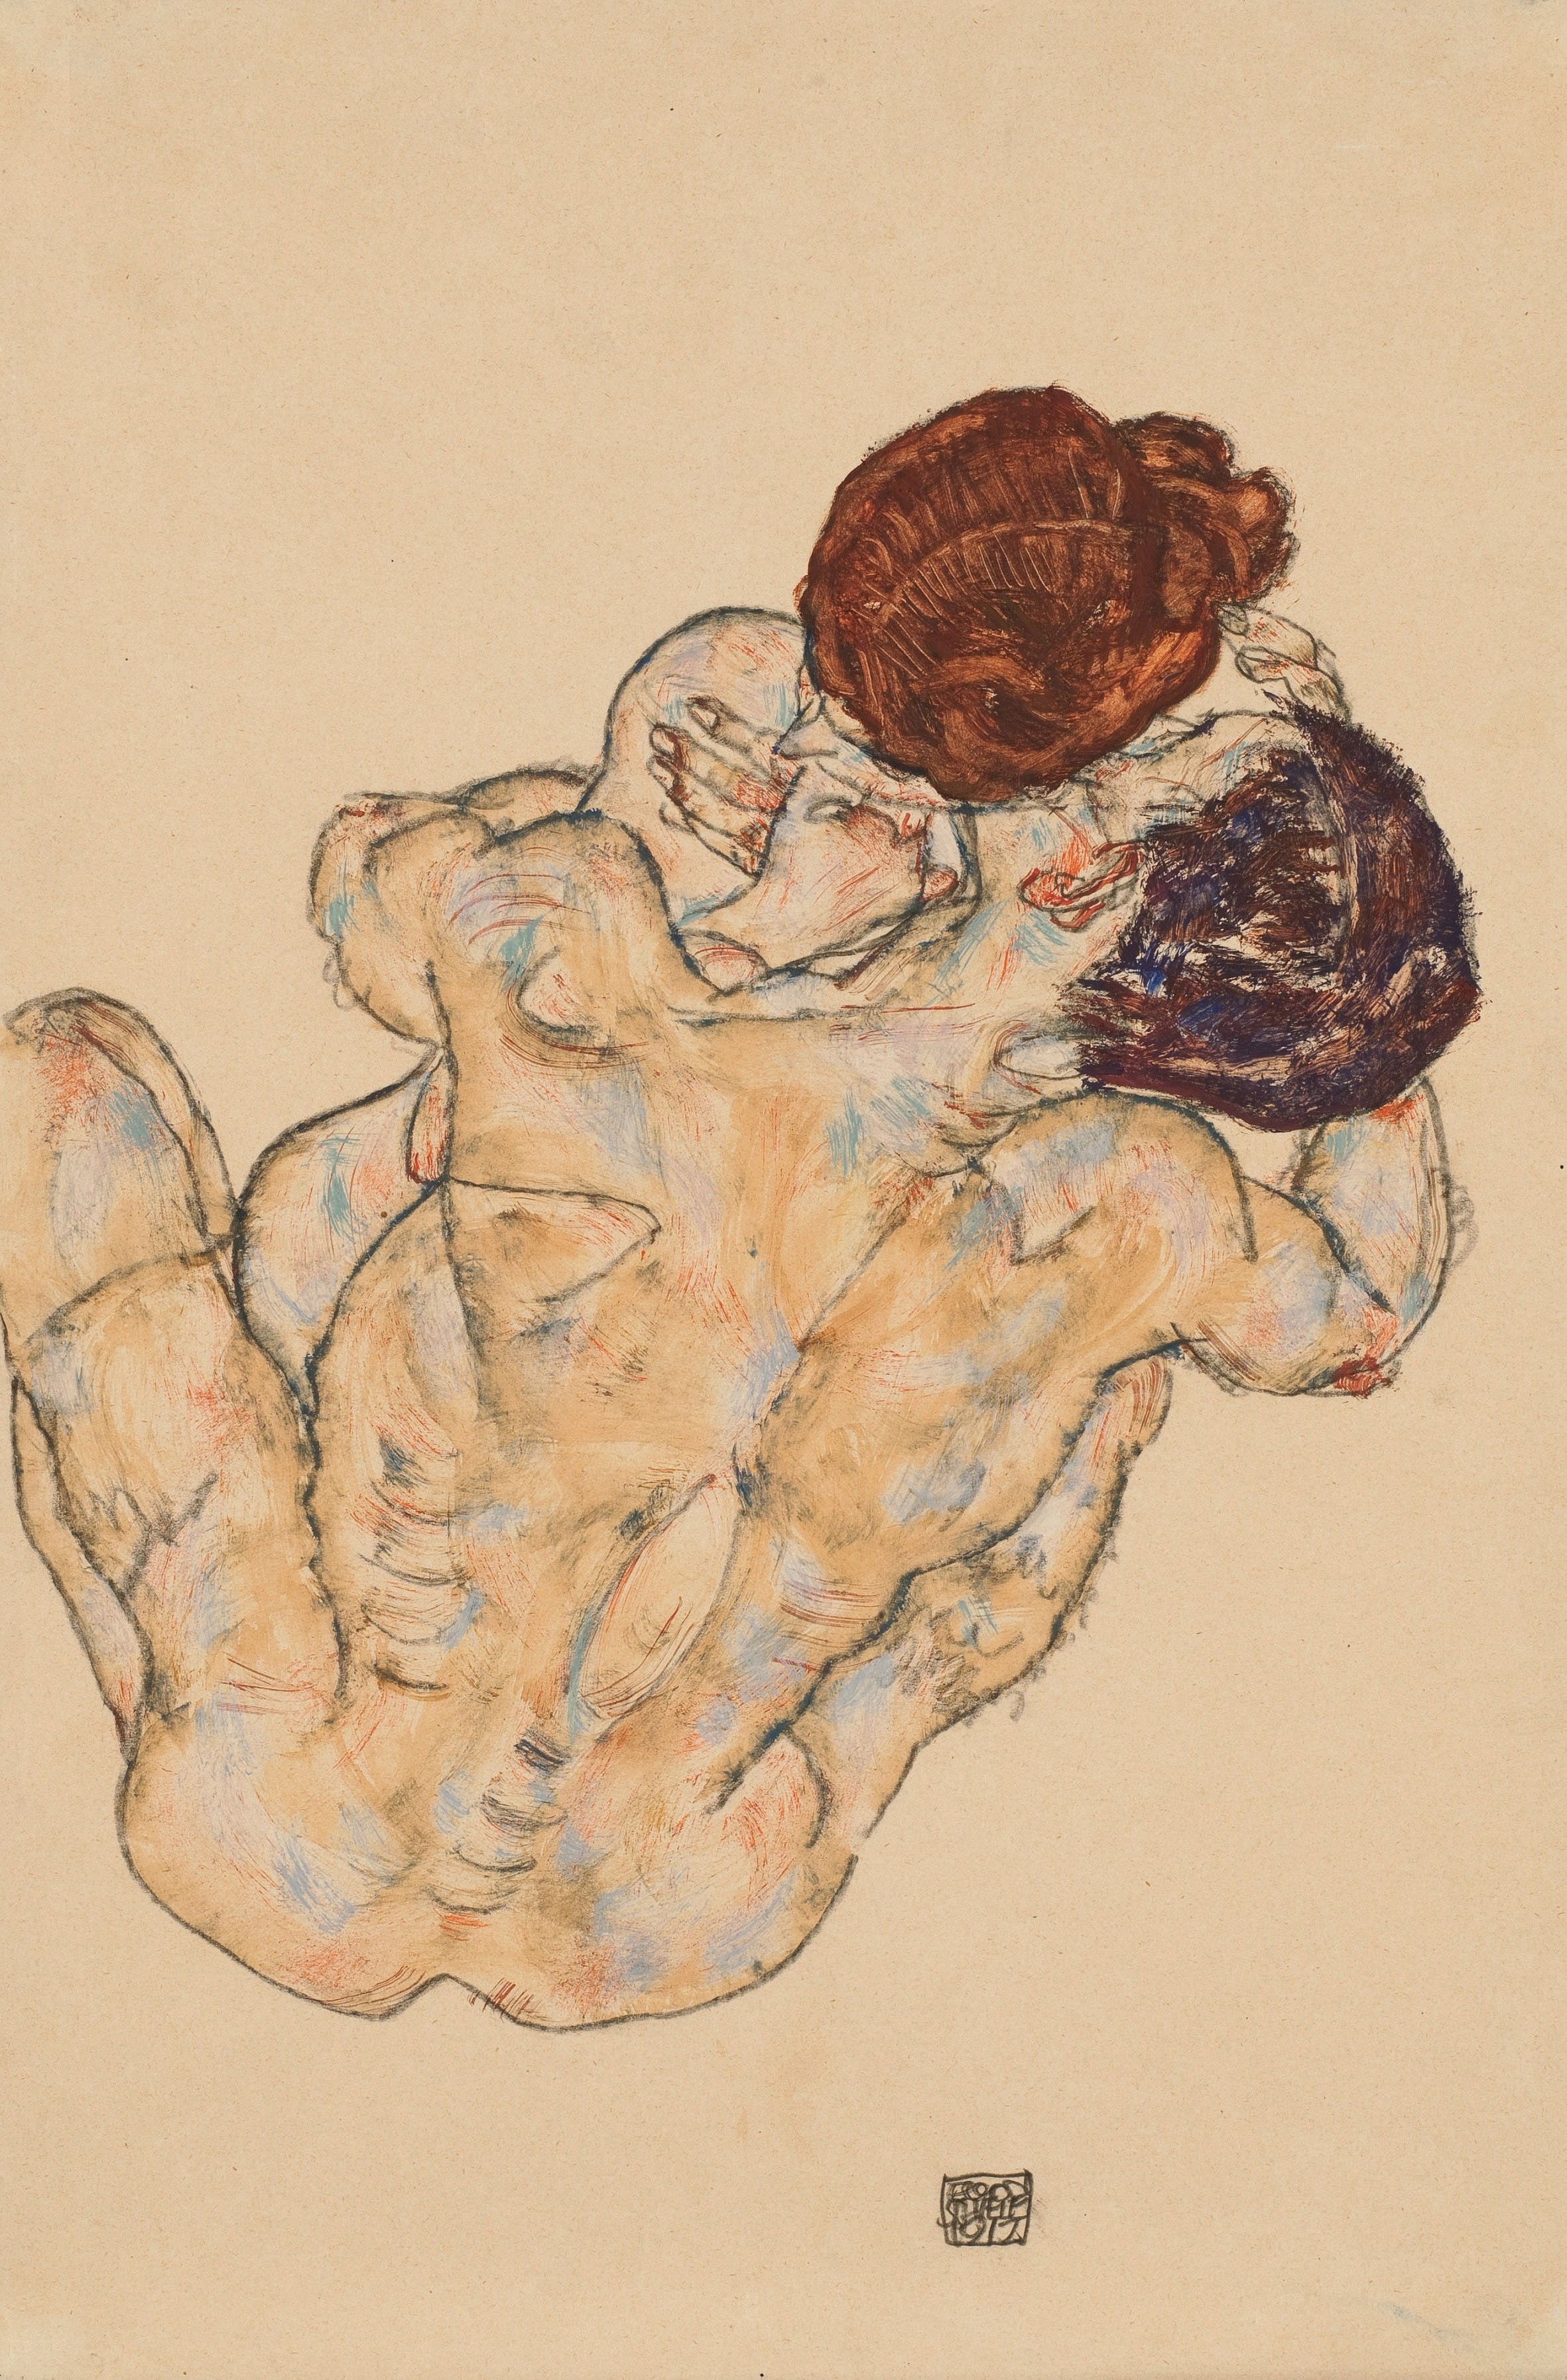 抱擁 by Egon Schiele - 1917年 - 48.9 x 28.9 cm 